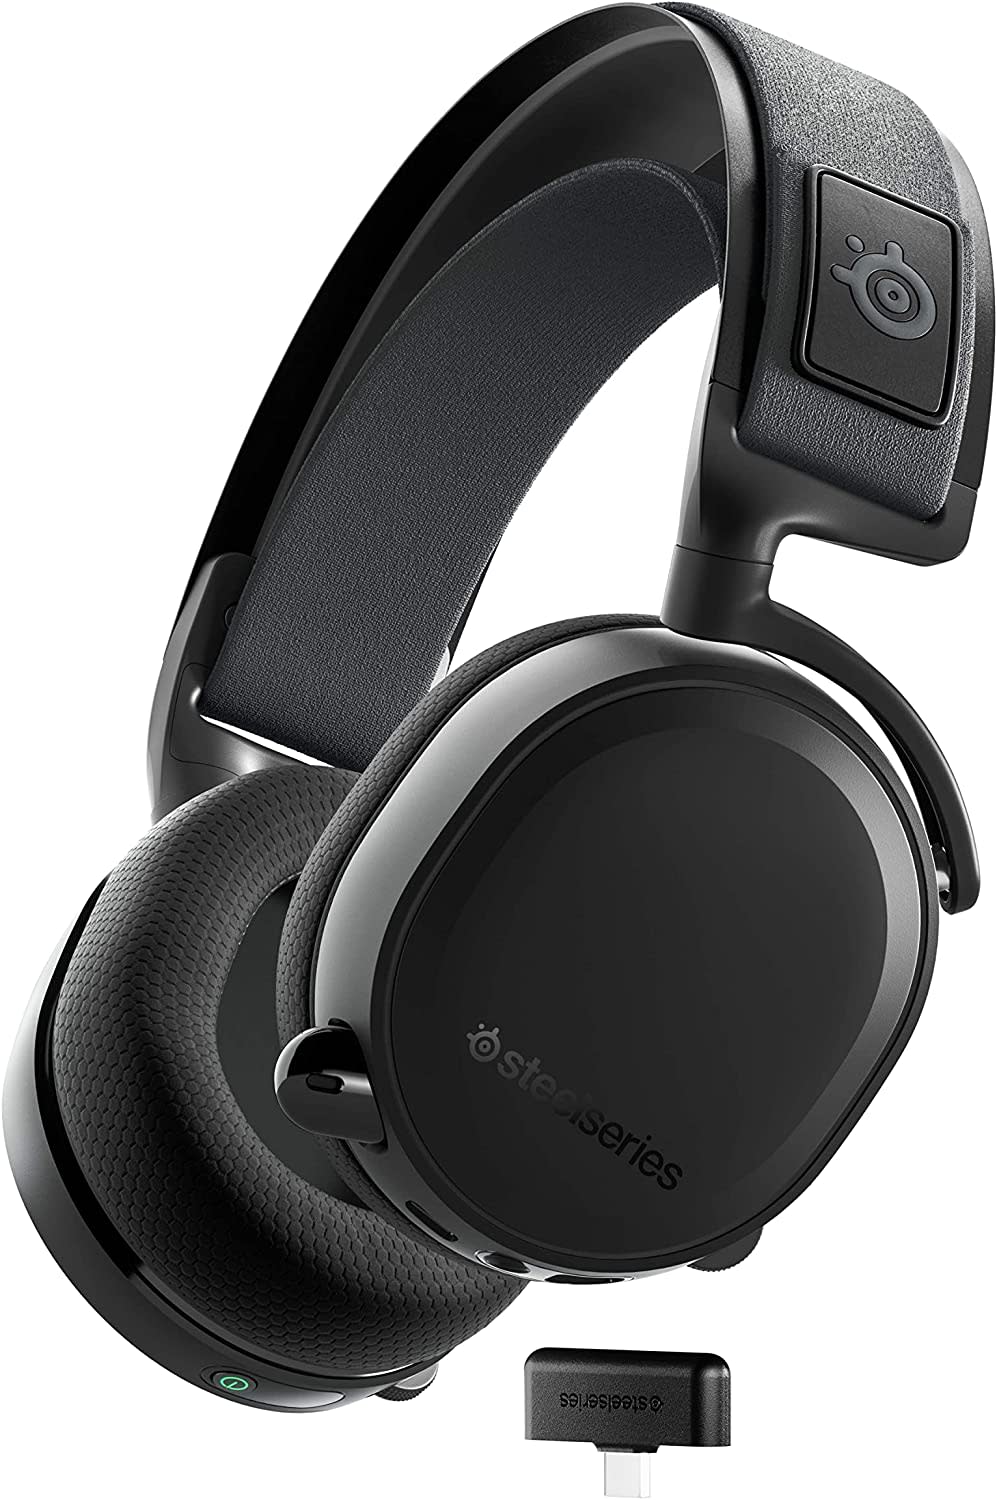 Most Comfortable Headphones, SteelSeries Arctis 7+